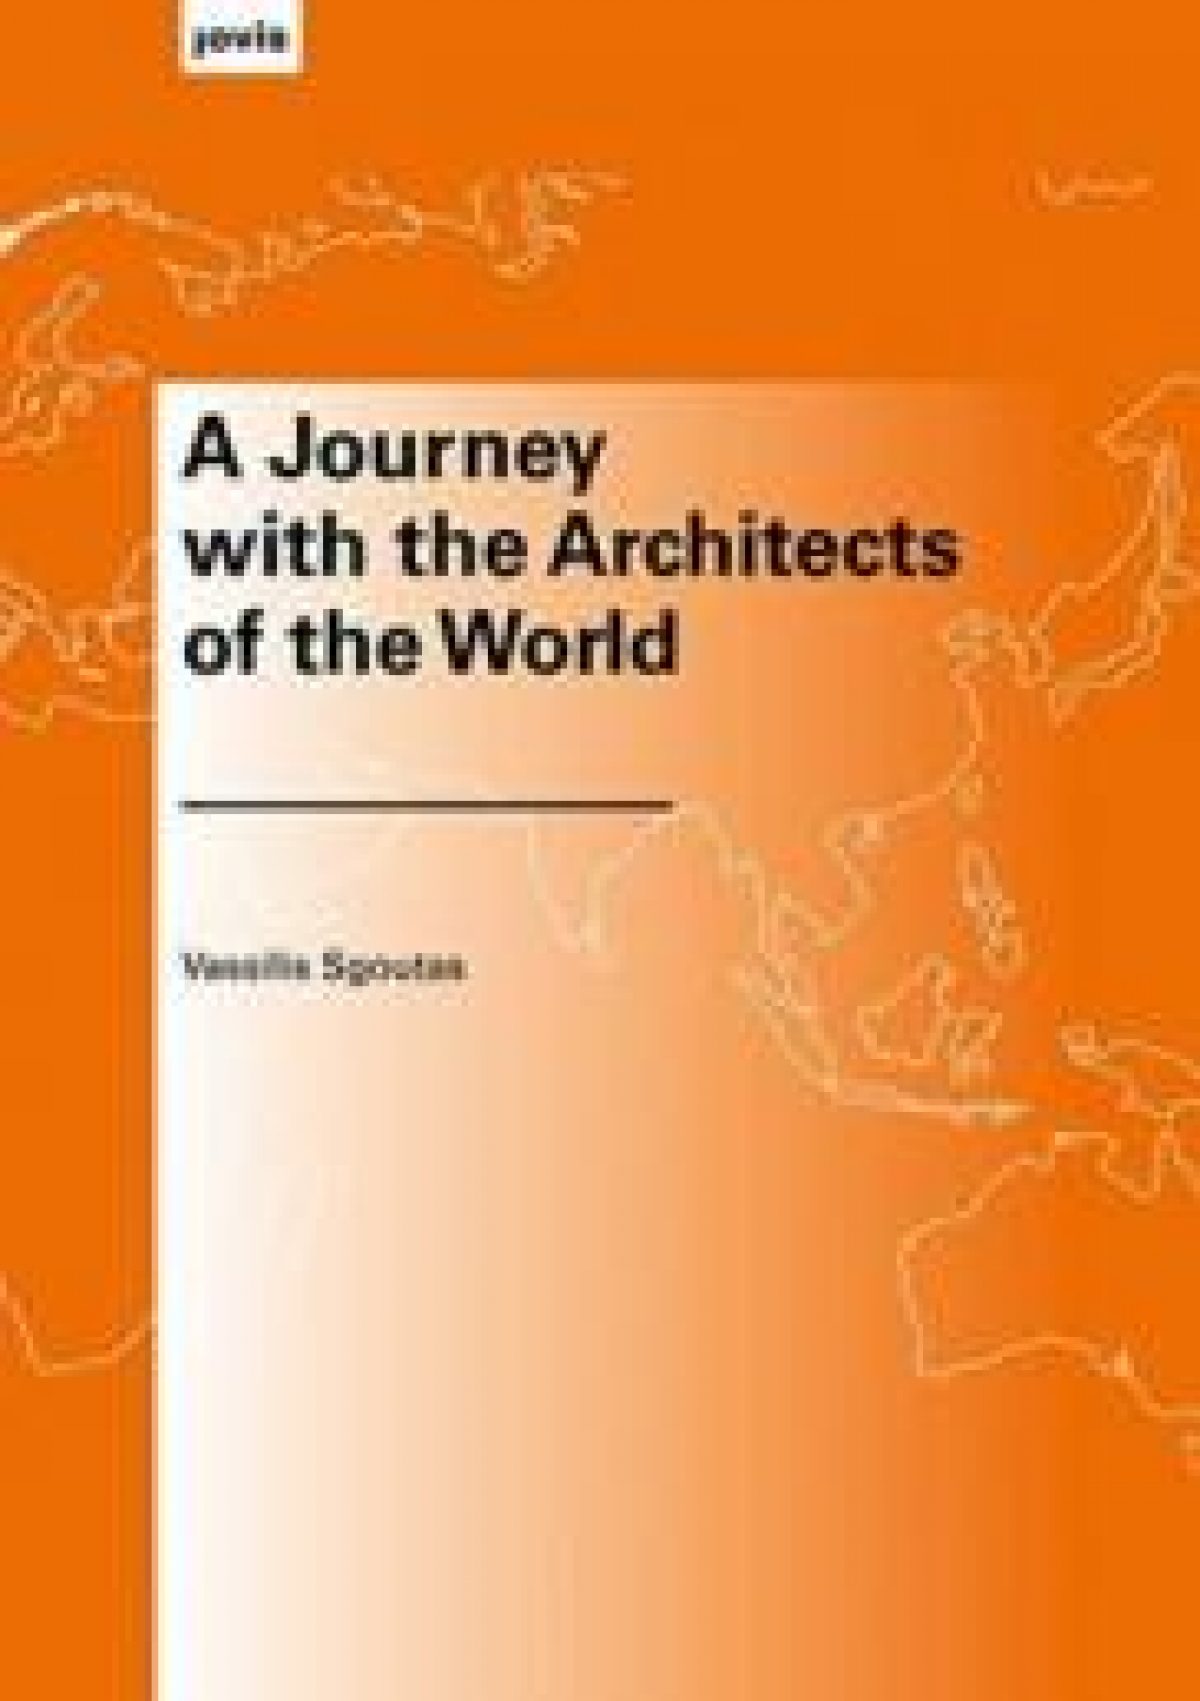 Προς έκδοση το νέο βιβλίο του αρχιτέκτονα Βασίλη Σγούτα με τίτλο “A Journey with the Architects of the World”